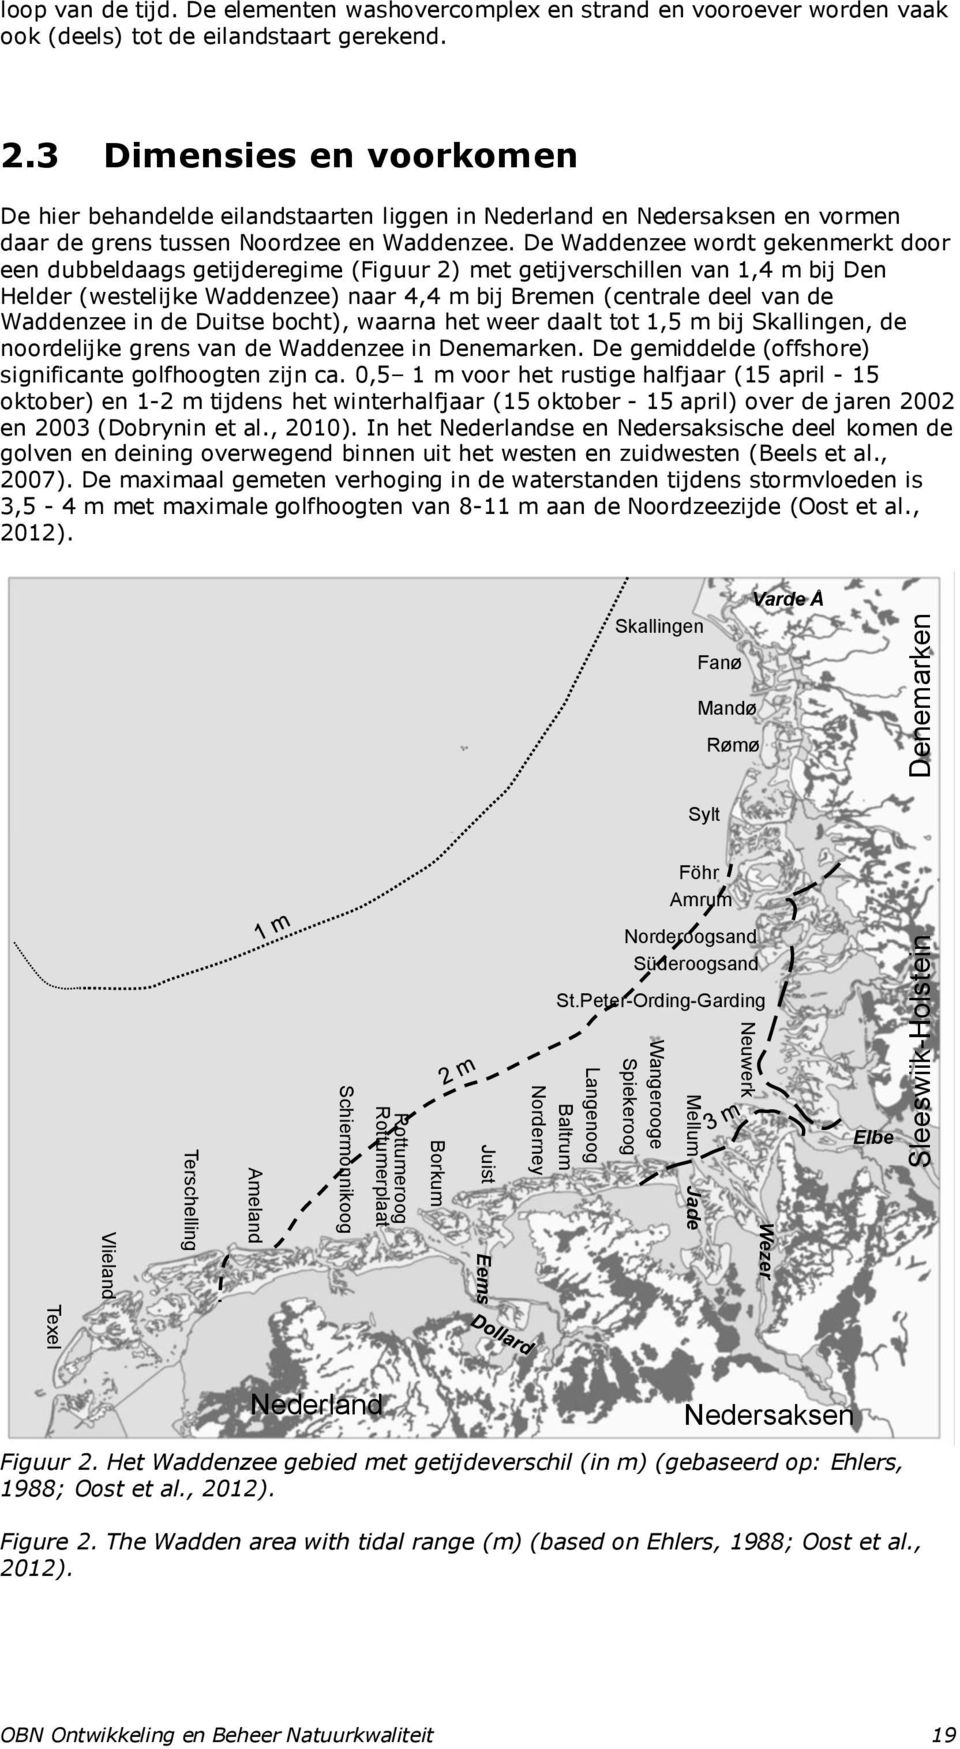 De Waddenzee wordt gekenmerkt door een dubbeldaags getijderegime (Figuur 2) met getijverschillen van 1,4 m bij Den Helder (westelijke Waddenzee) naar 4,4 m bij Bremen (centrale deel van de Waddenzee